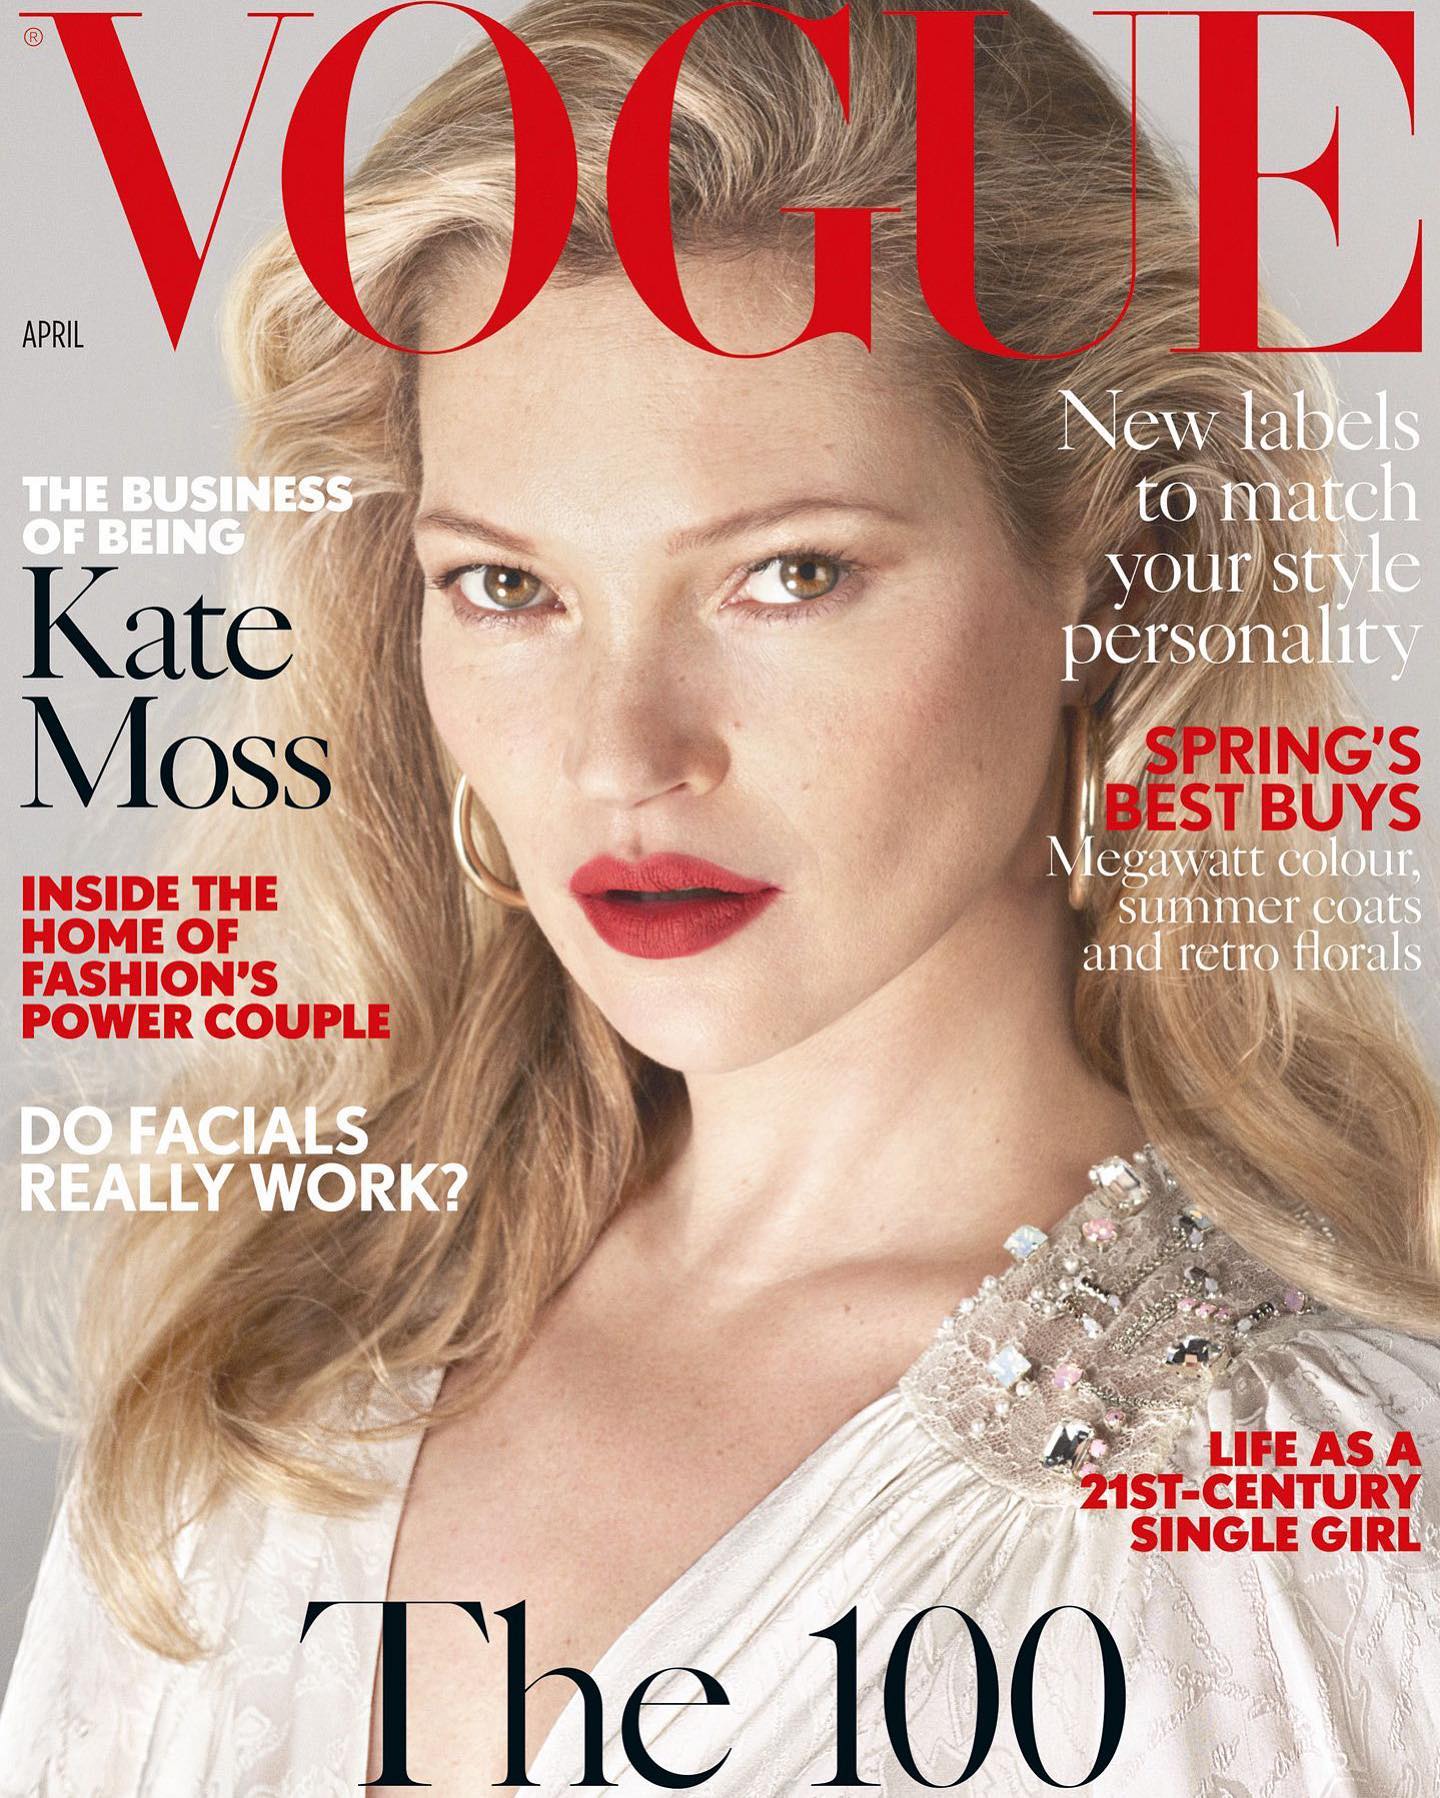 Журнал вог сайт. Кейт Мосс обложка Вог. Кейт Мосс на обложке Vogue. Кейт Мосс обложки журналов. Vogue журнал Кейт Мосс.